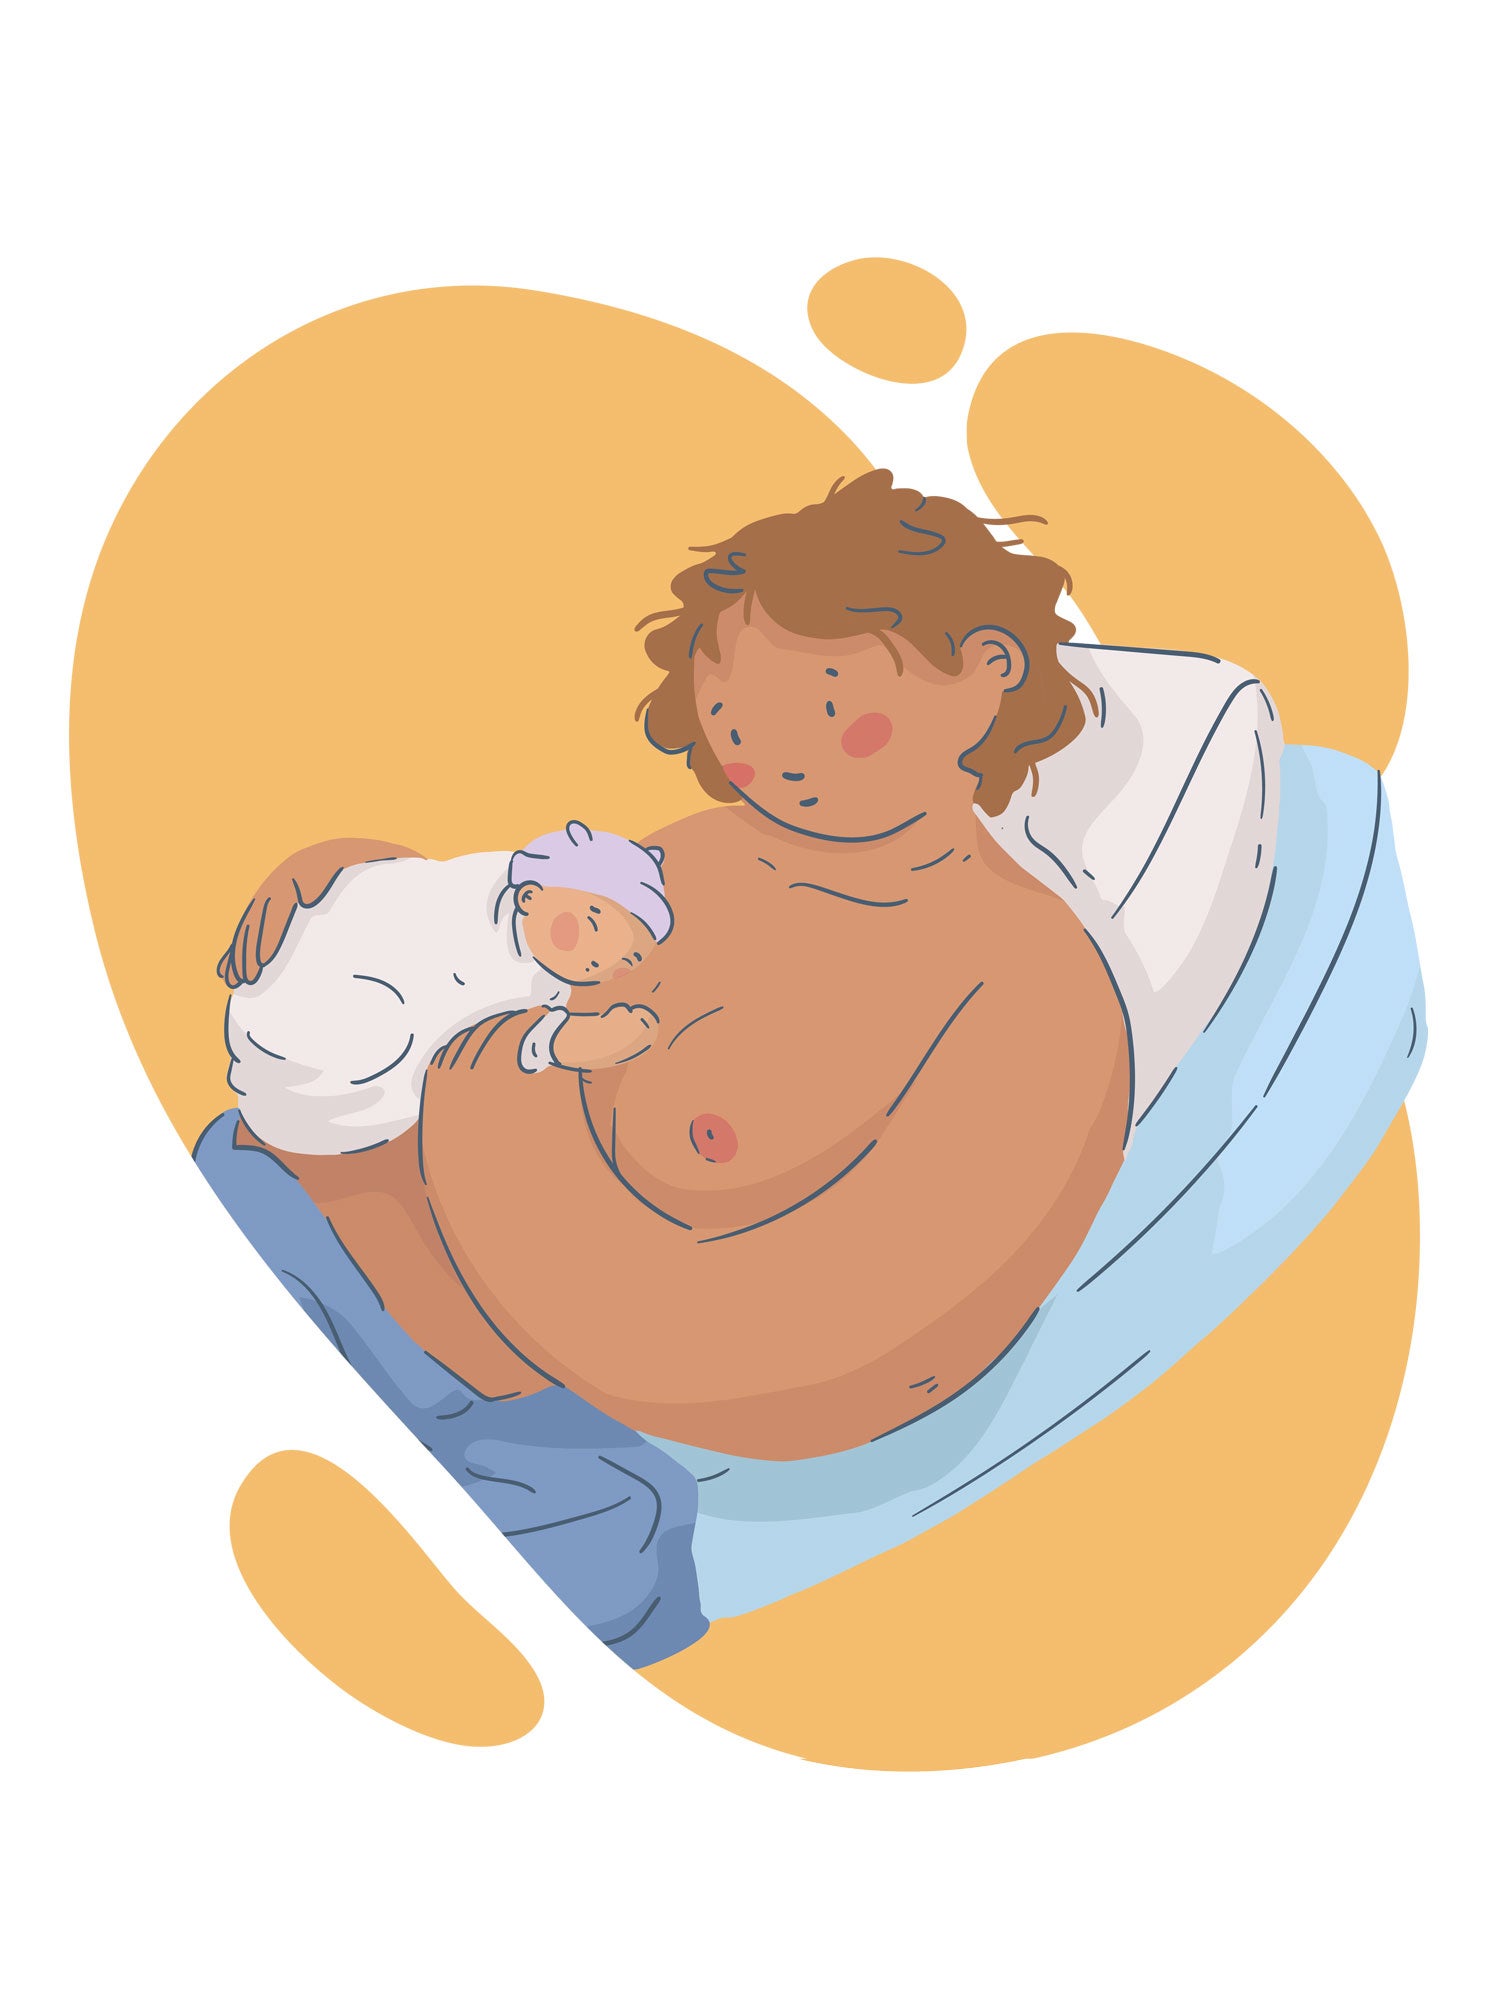 Intervenciones y cuidados inmediatos al momento del nacimiento